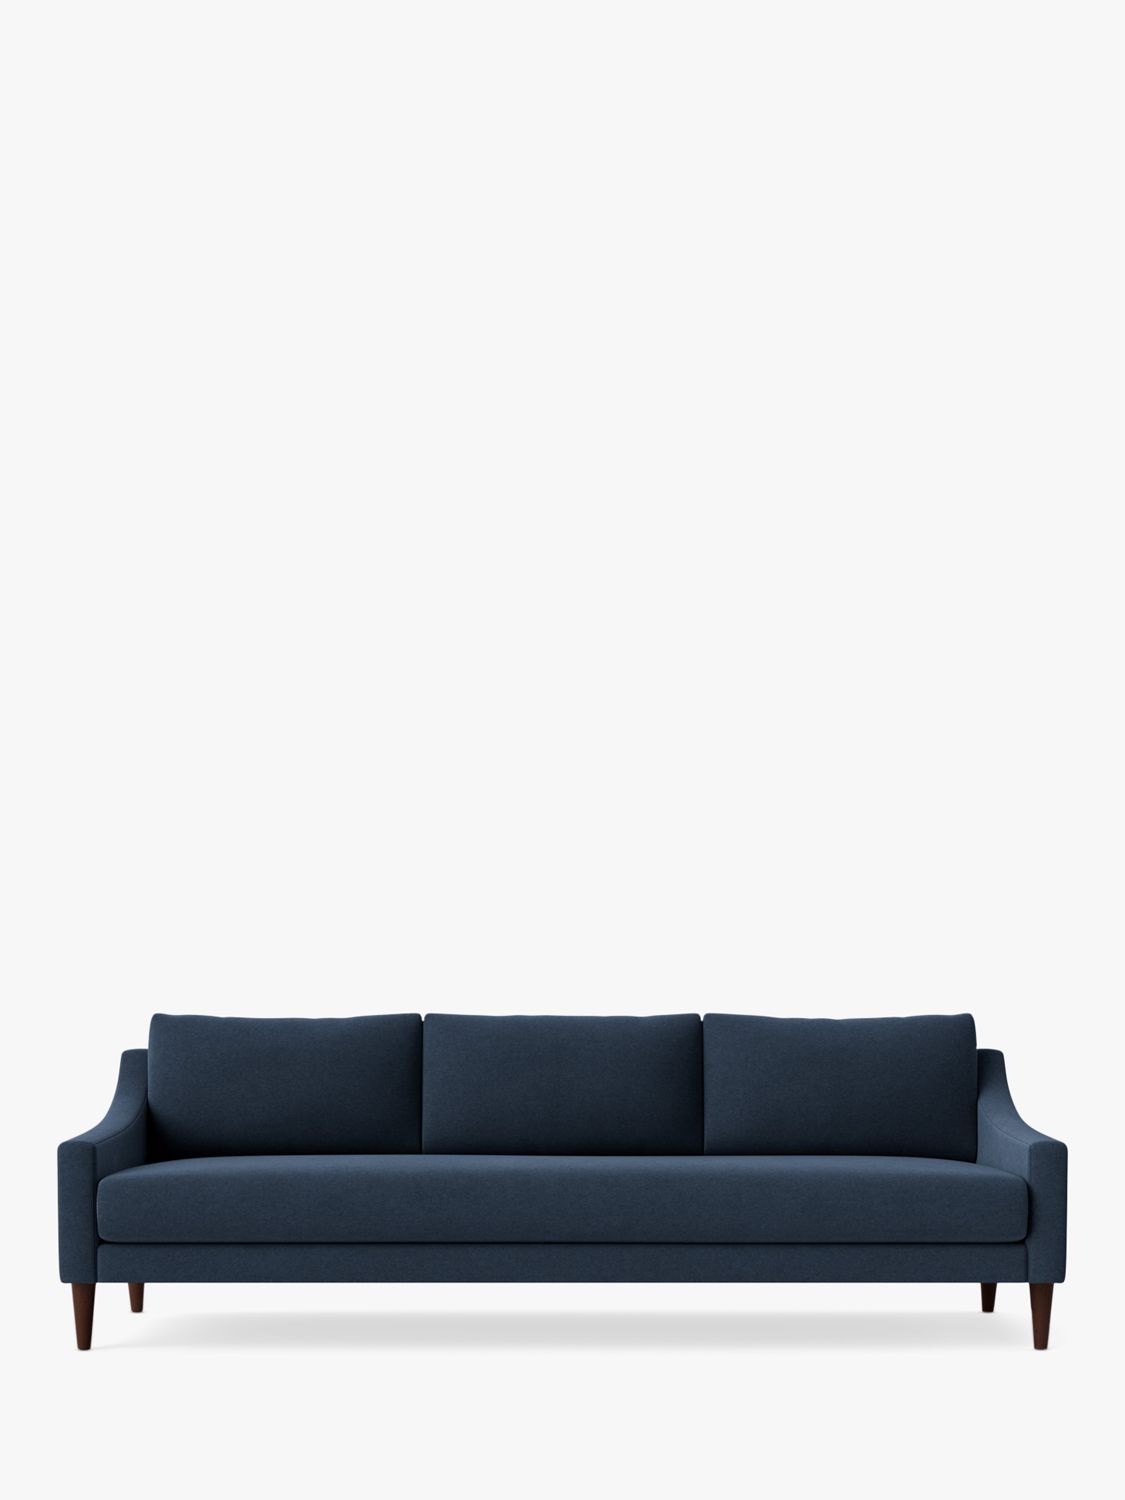 Turin Range, Swoon Turin Large 3 Seater Sofa, Smart Wool Indigo